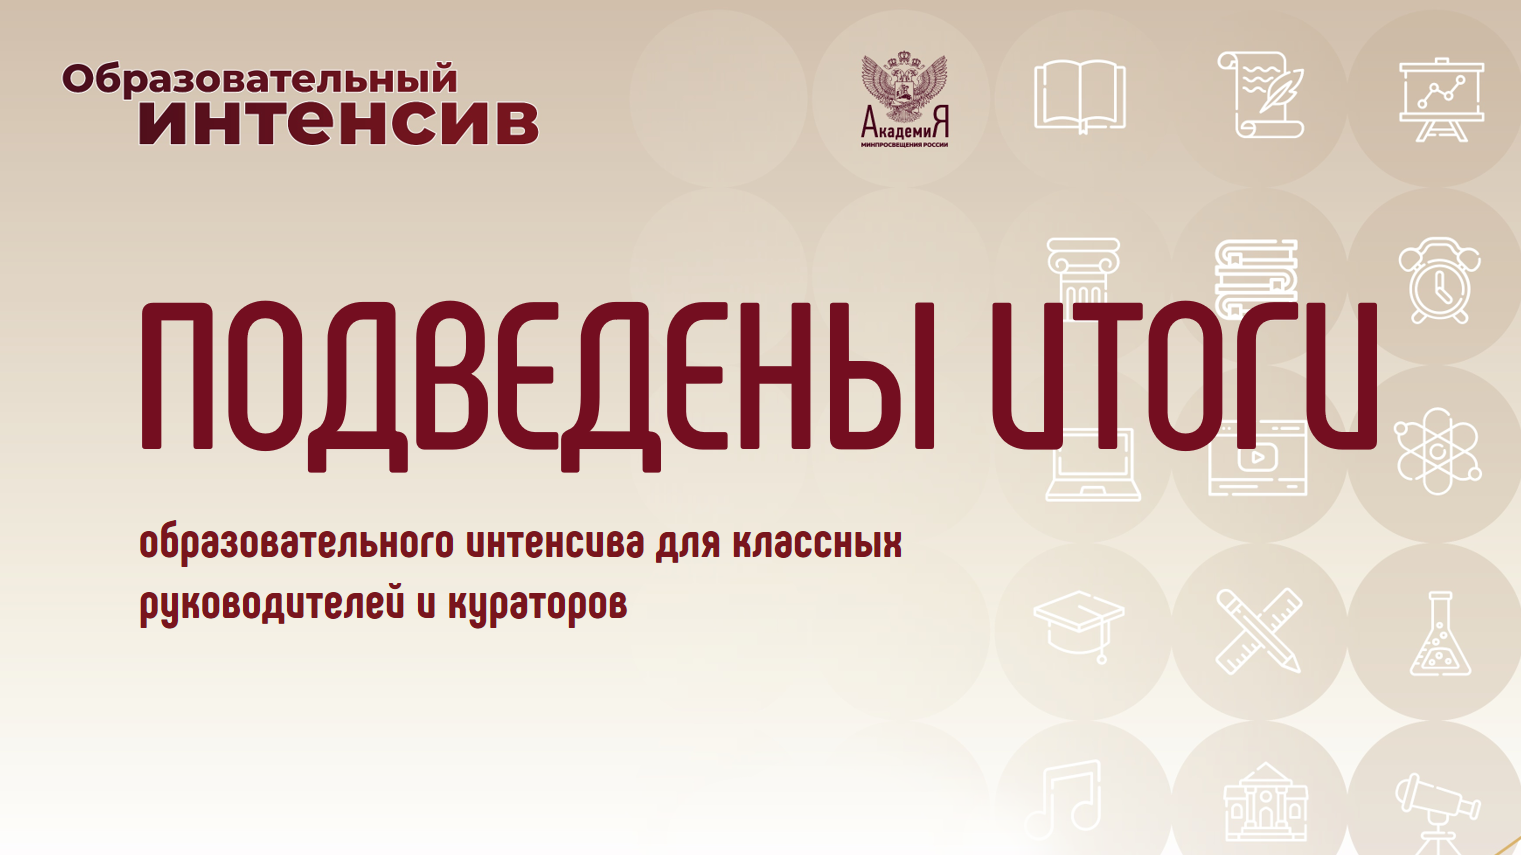 Академия Минпросвещения России подвела итоги образовательного интенсива для классных руководителей и кураторов